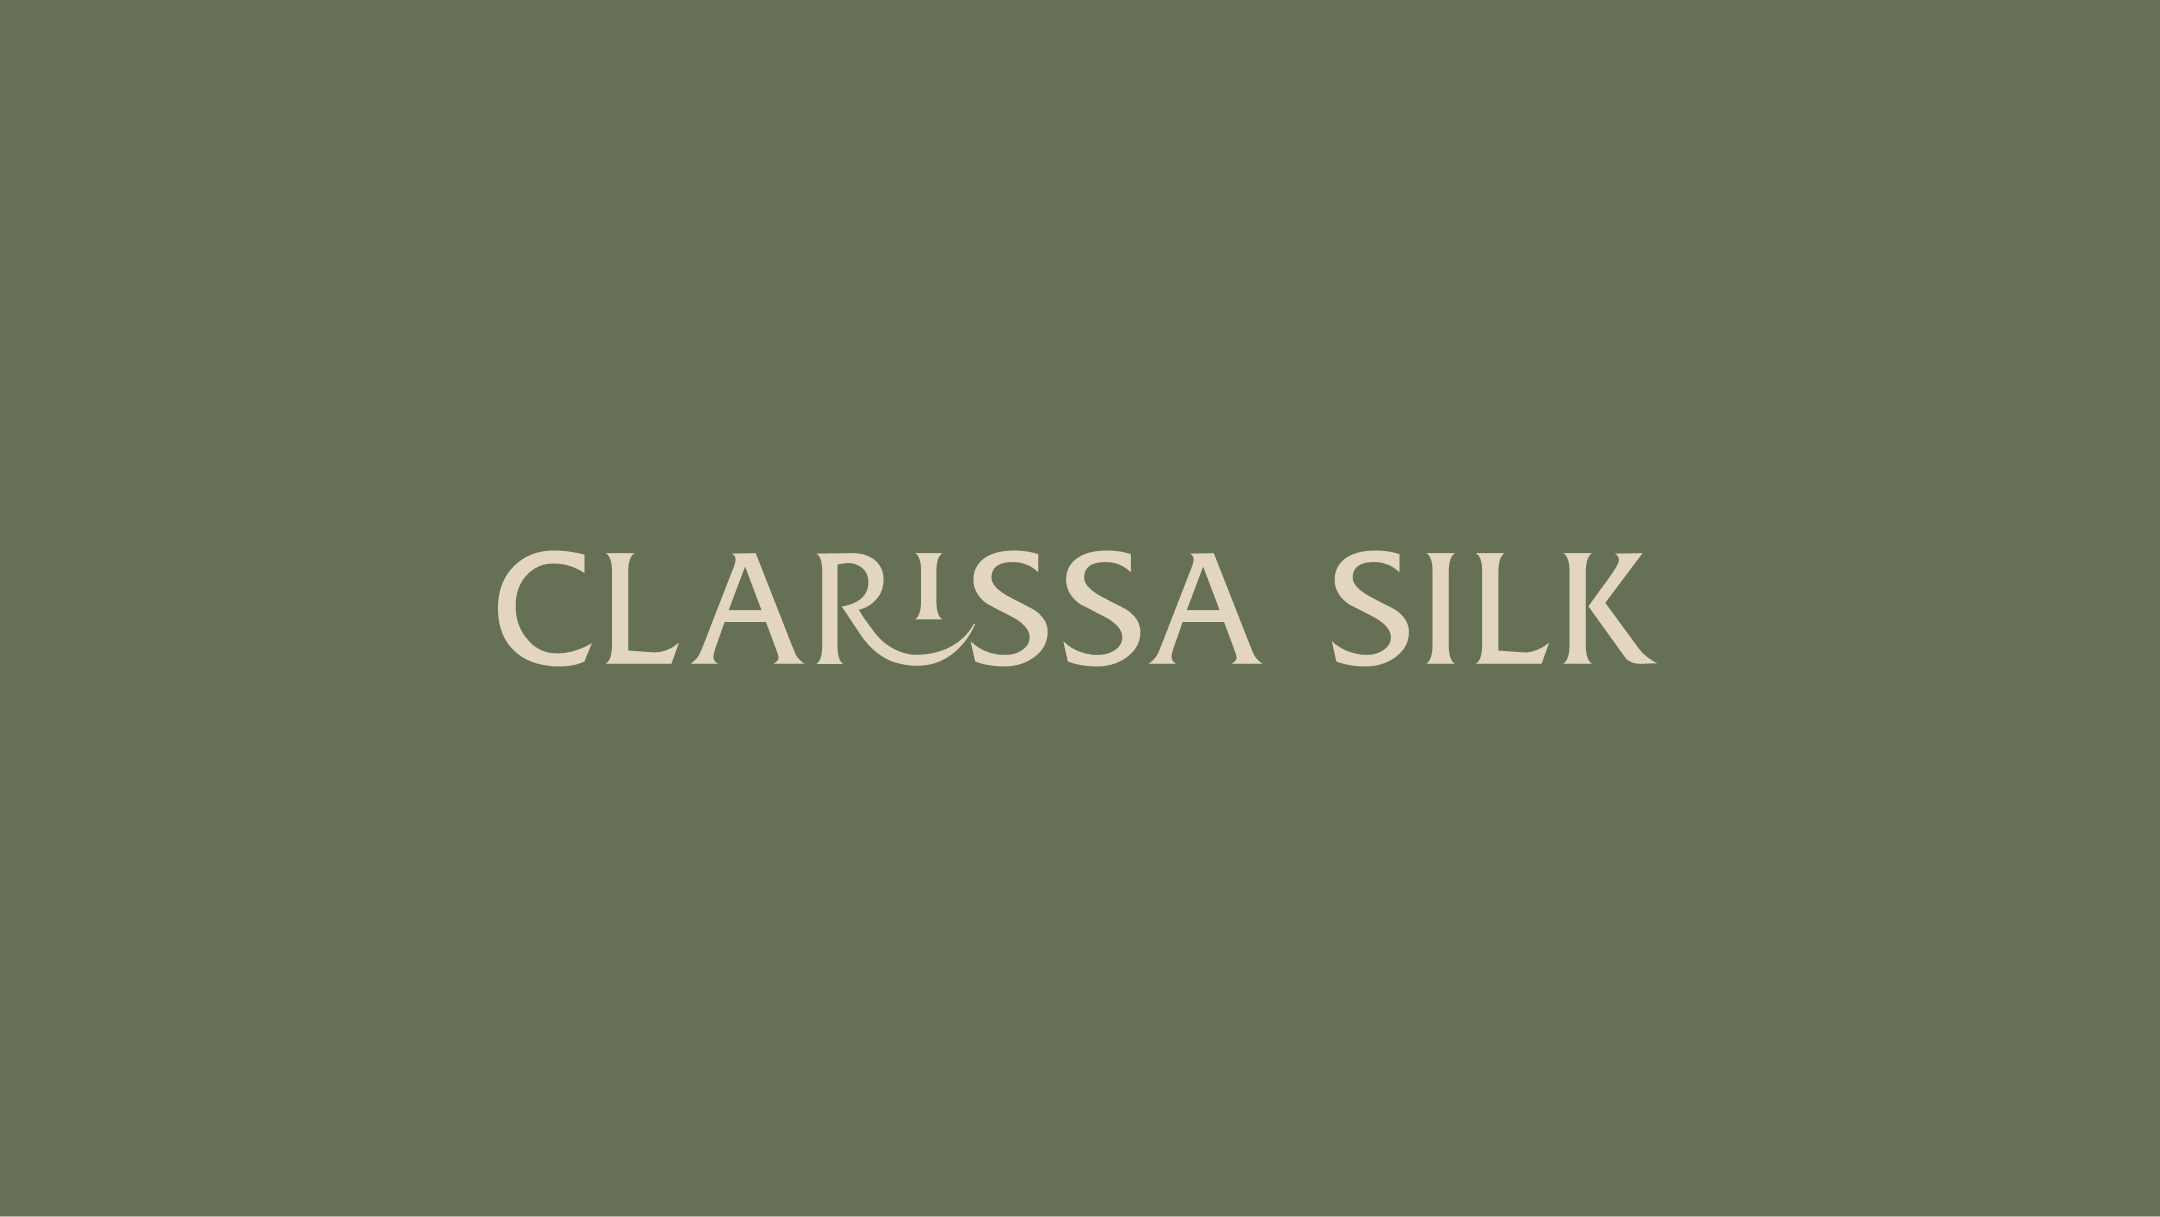 Clarissa Silk